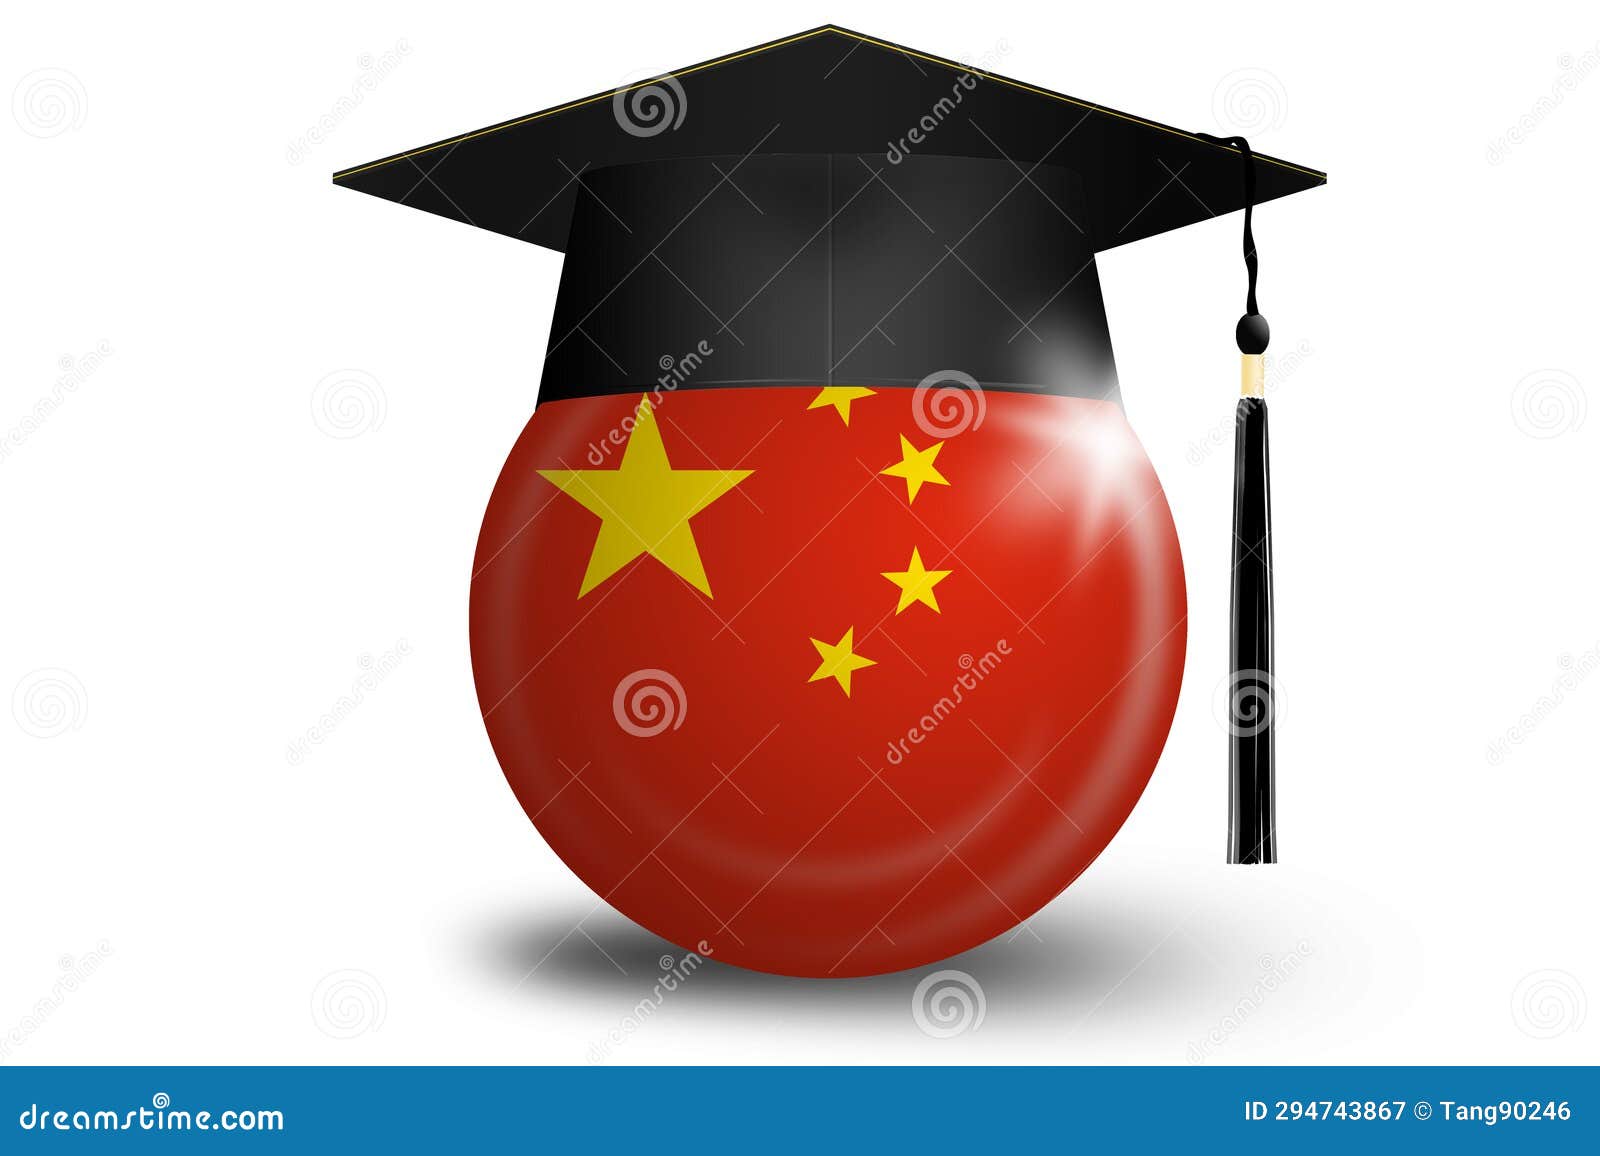 Graduation Cap With China Flag Royalty-Free Stock Image | CartoonDealer ...